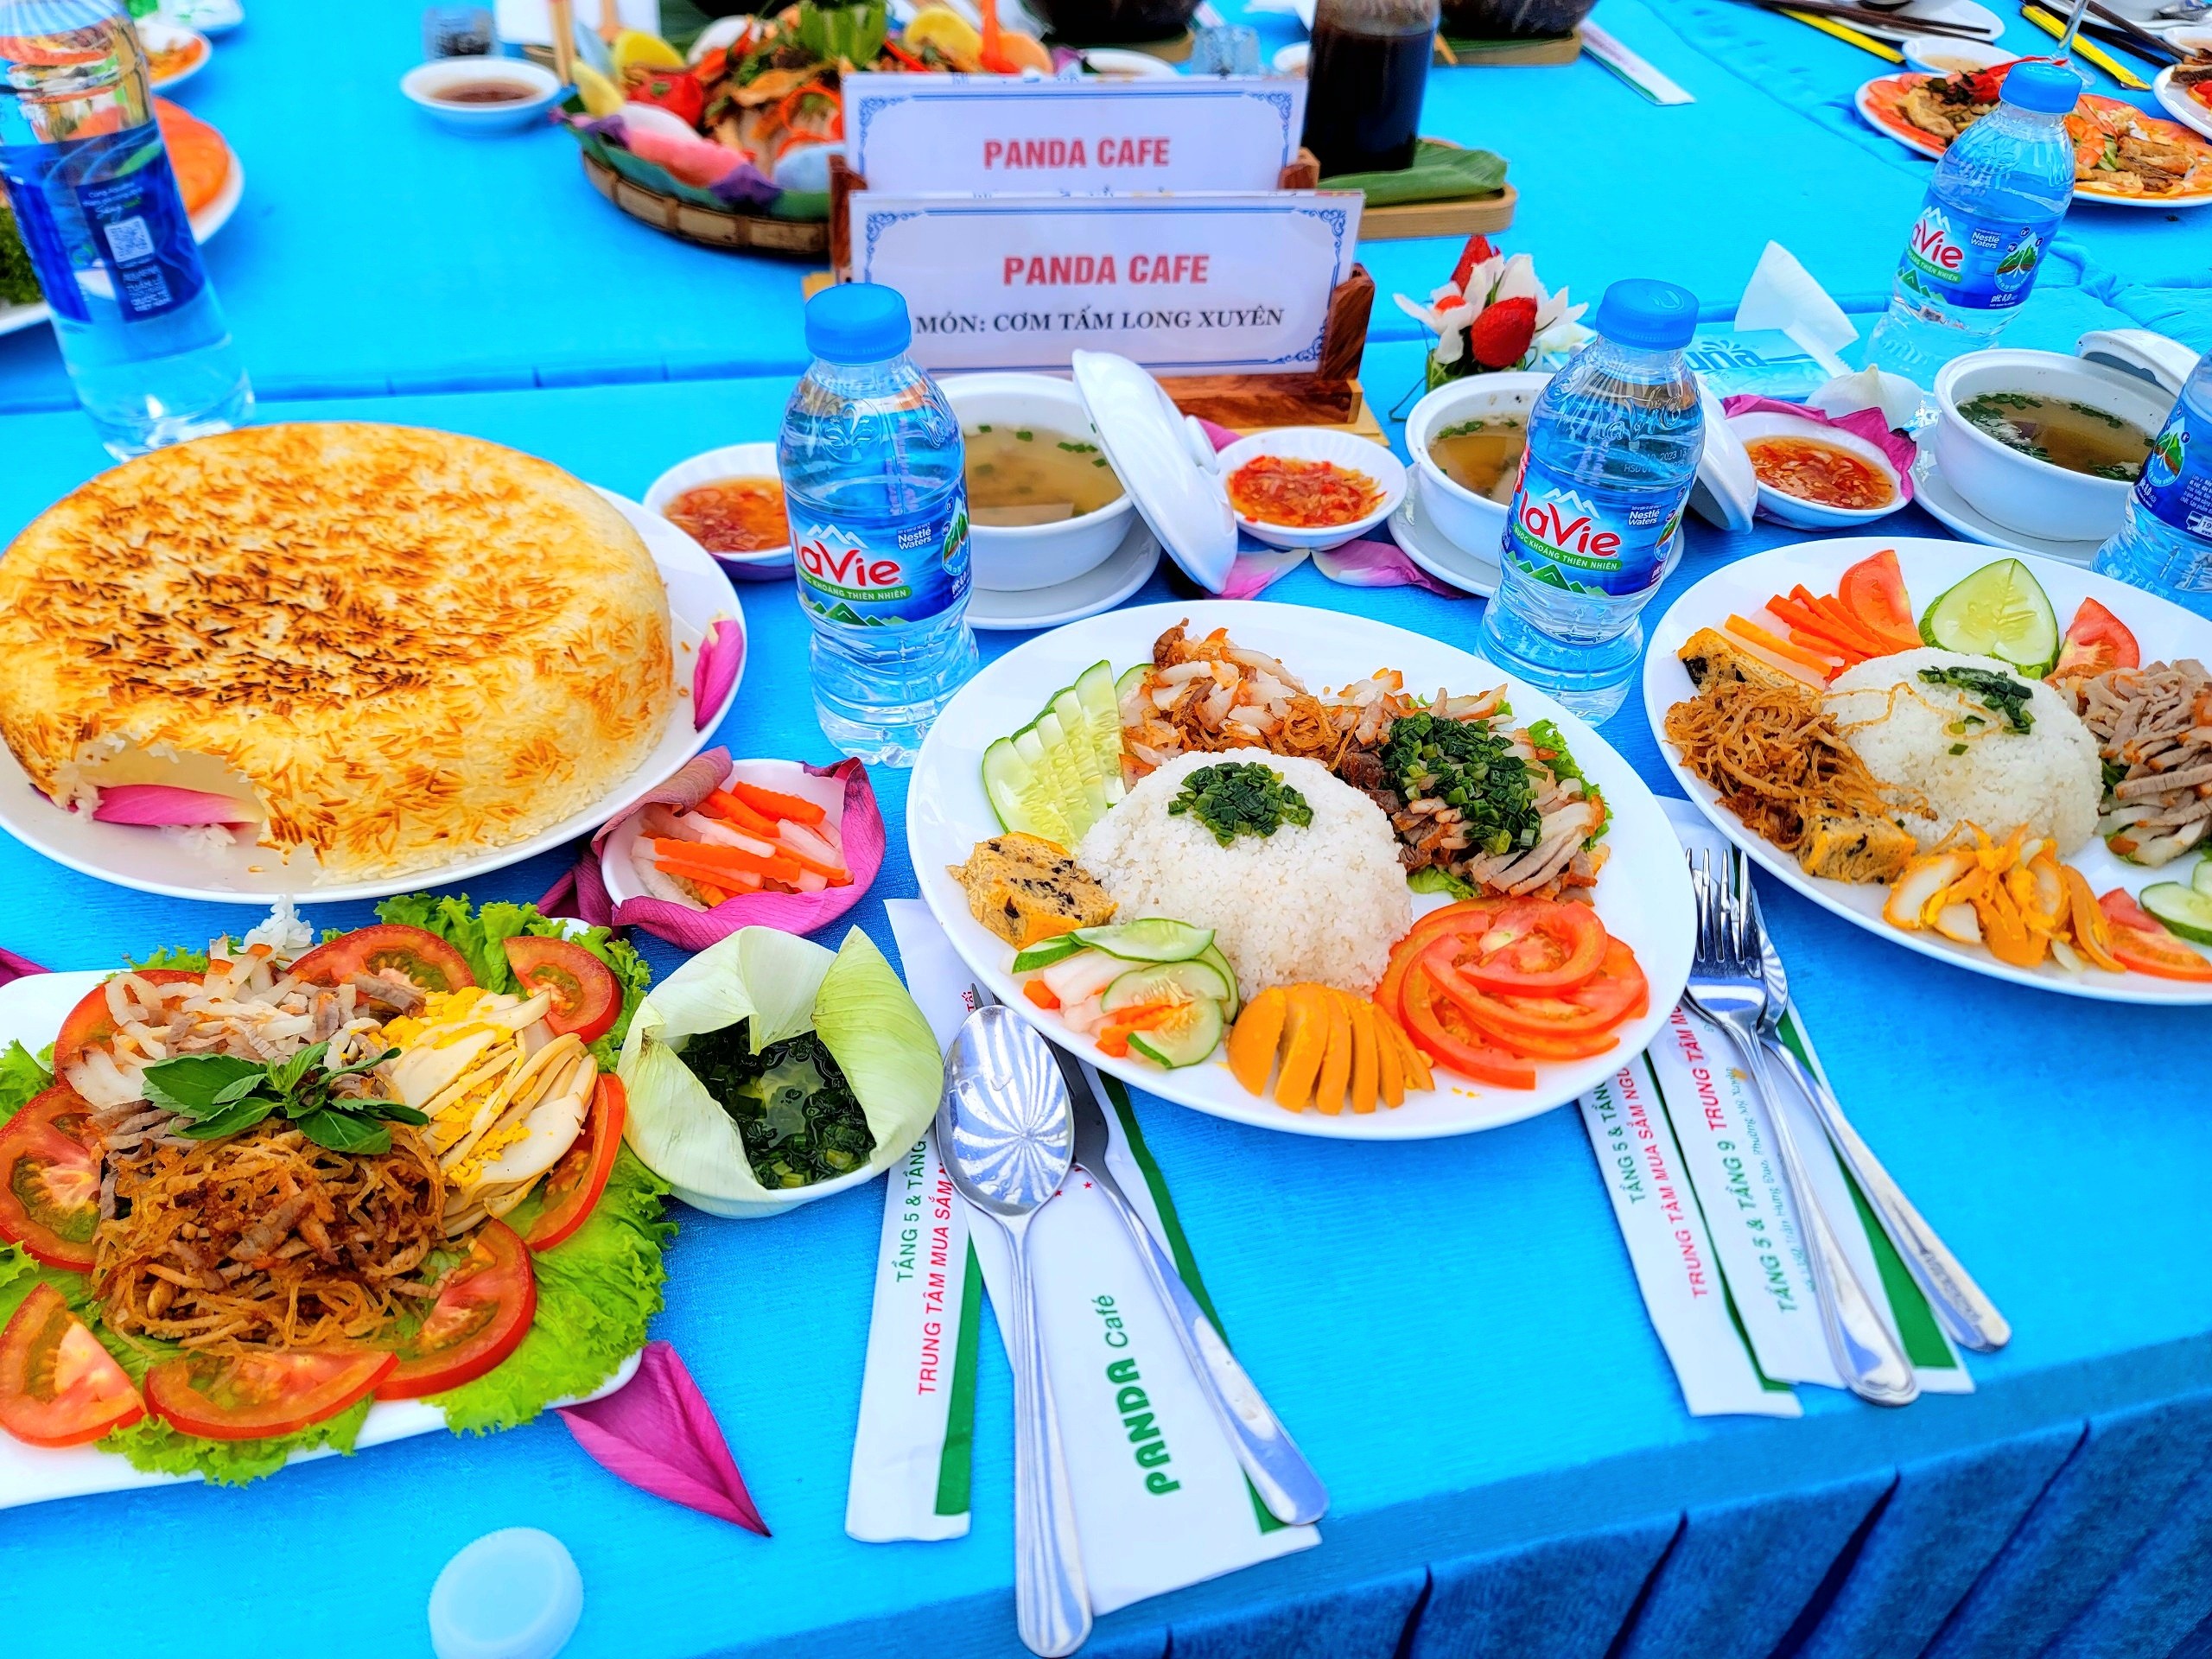 Cơm tấm Long Xuyên - món ăn được công nhận Kỷ lục Châu Á năm 2023.